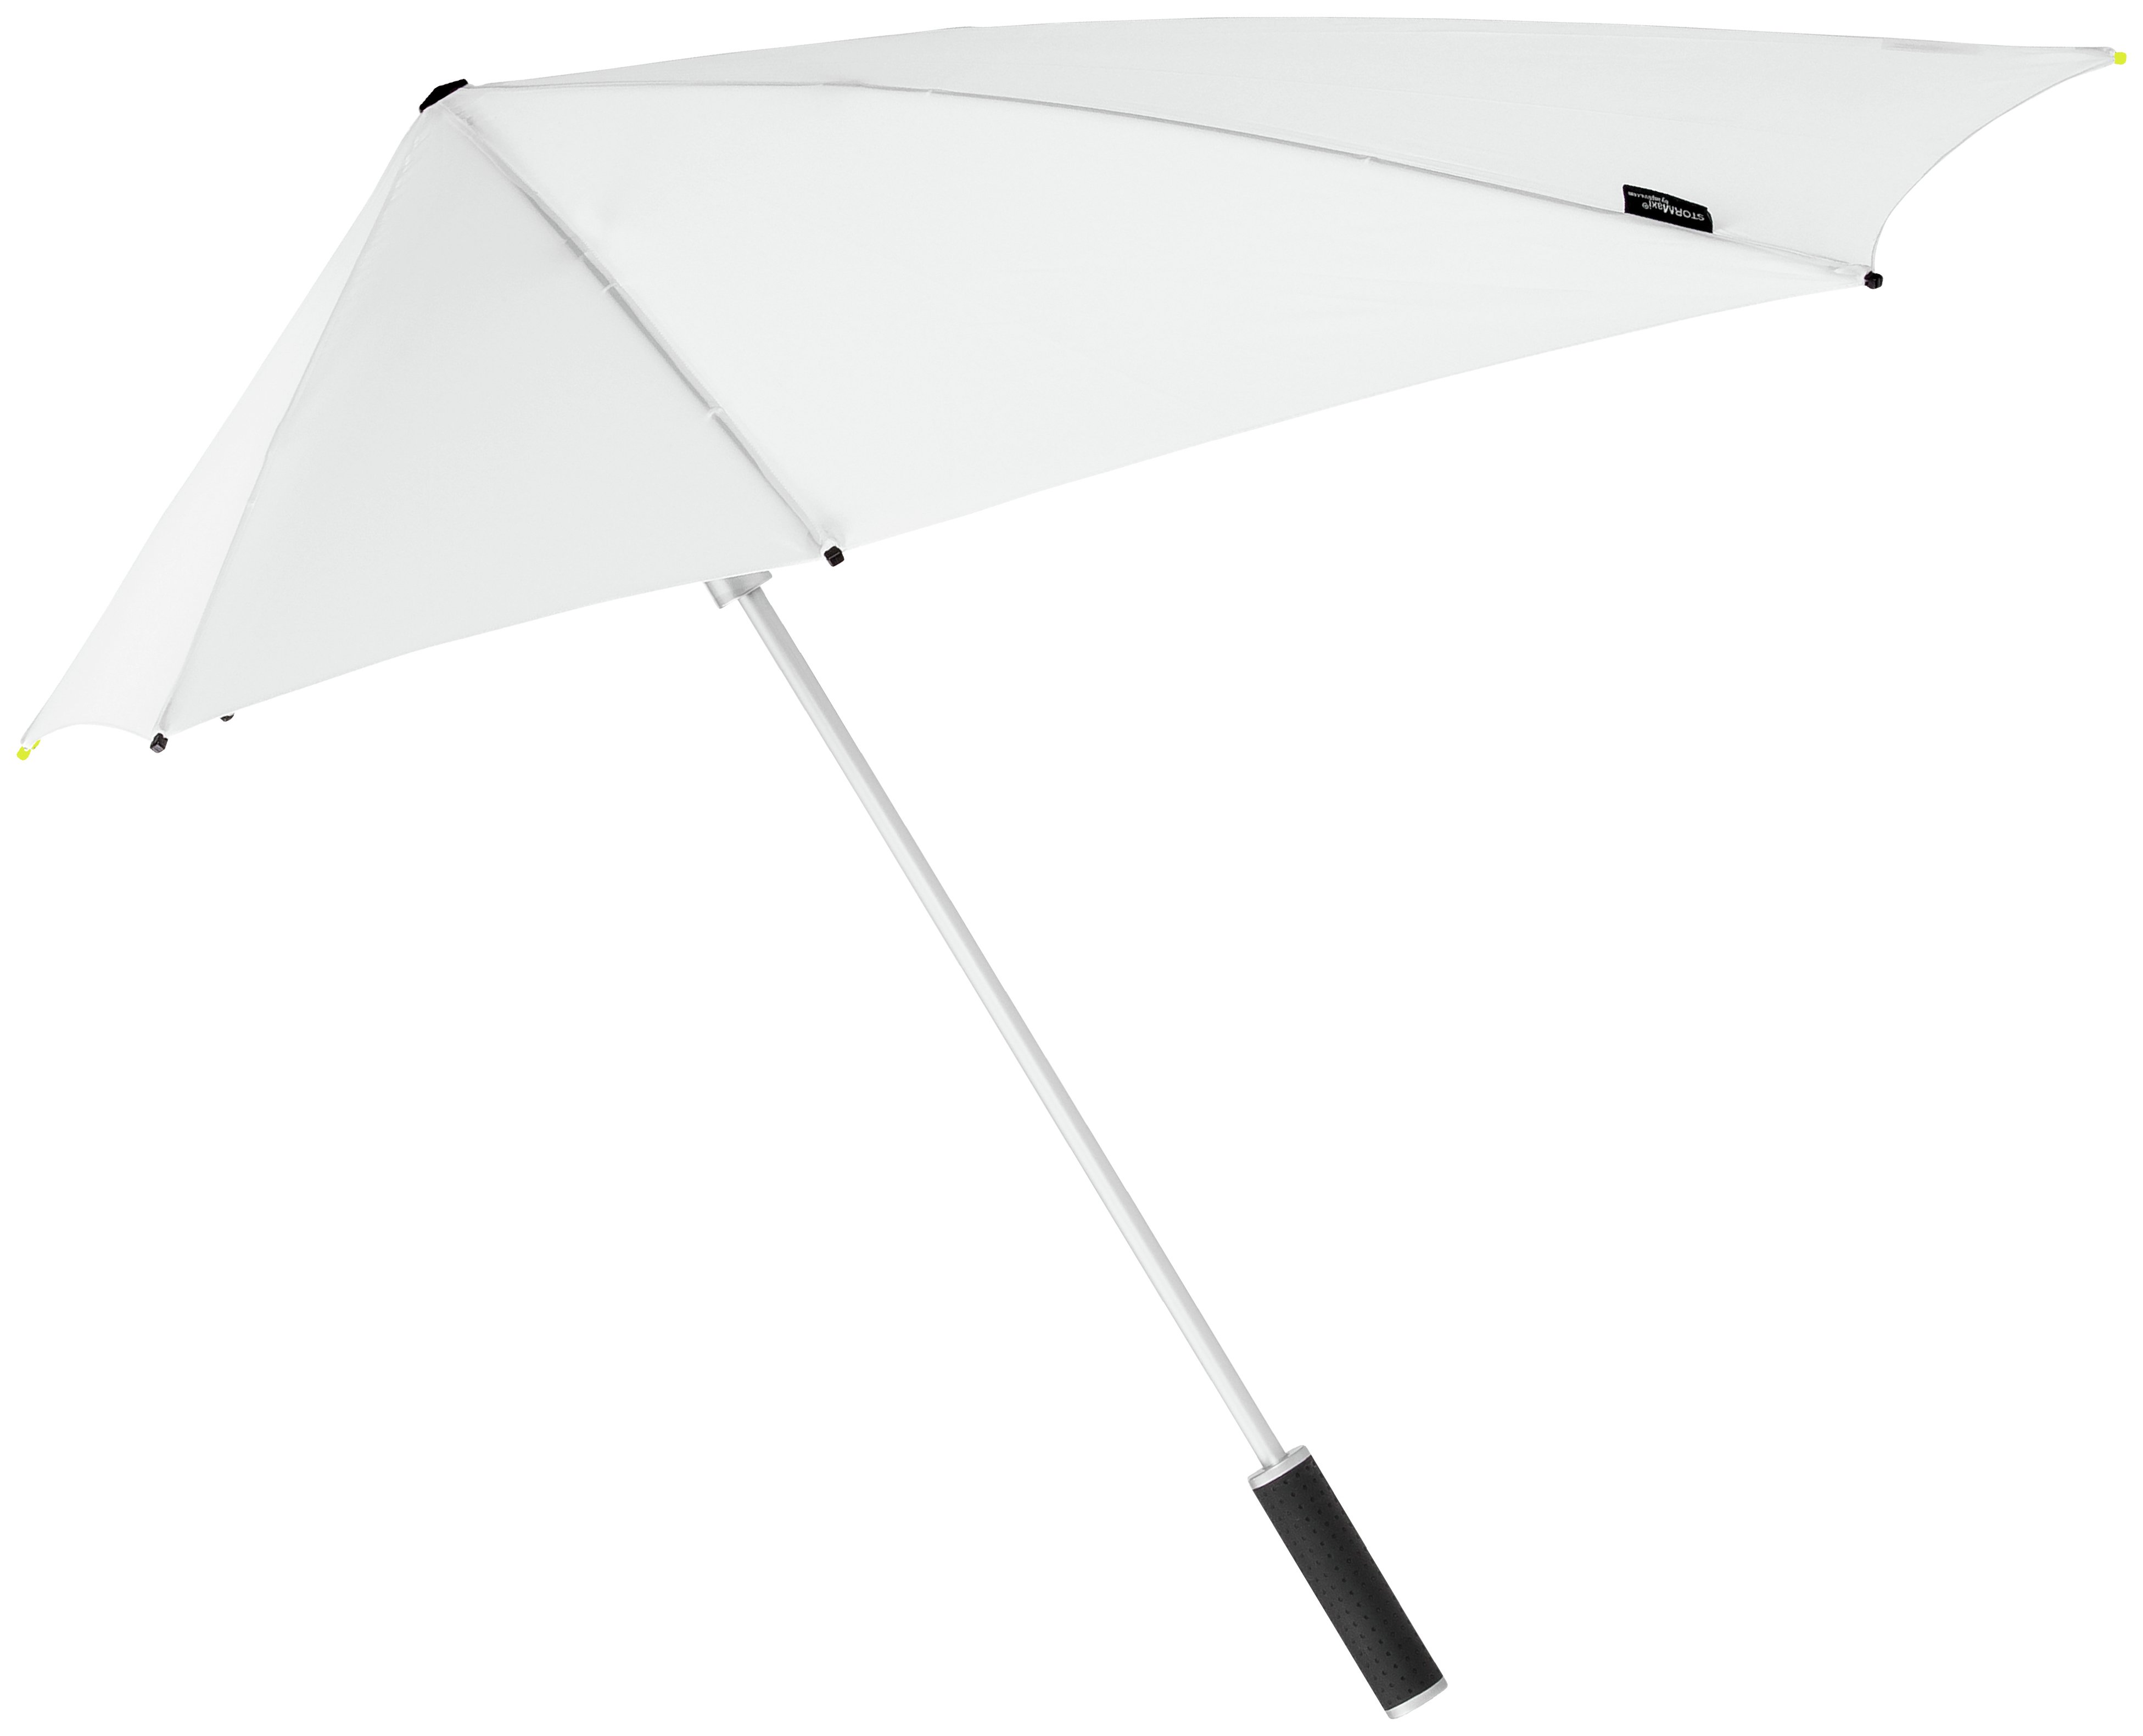 Stealthbomber Umbrella - White.